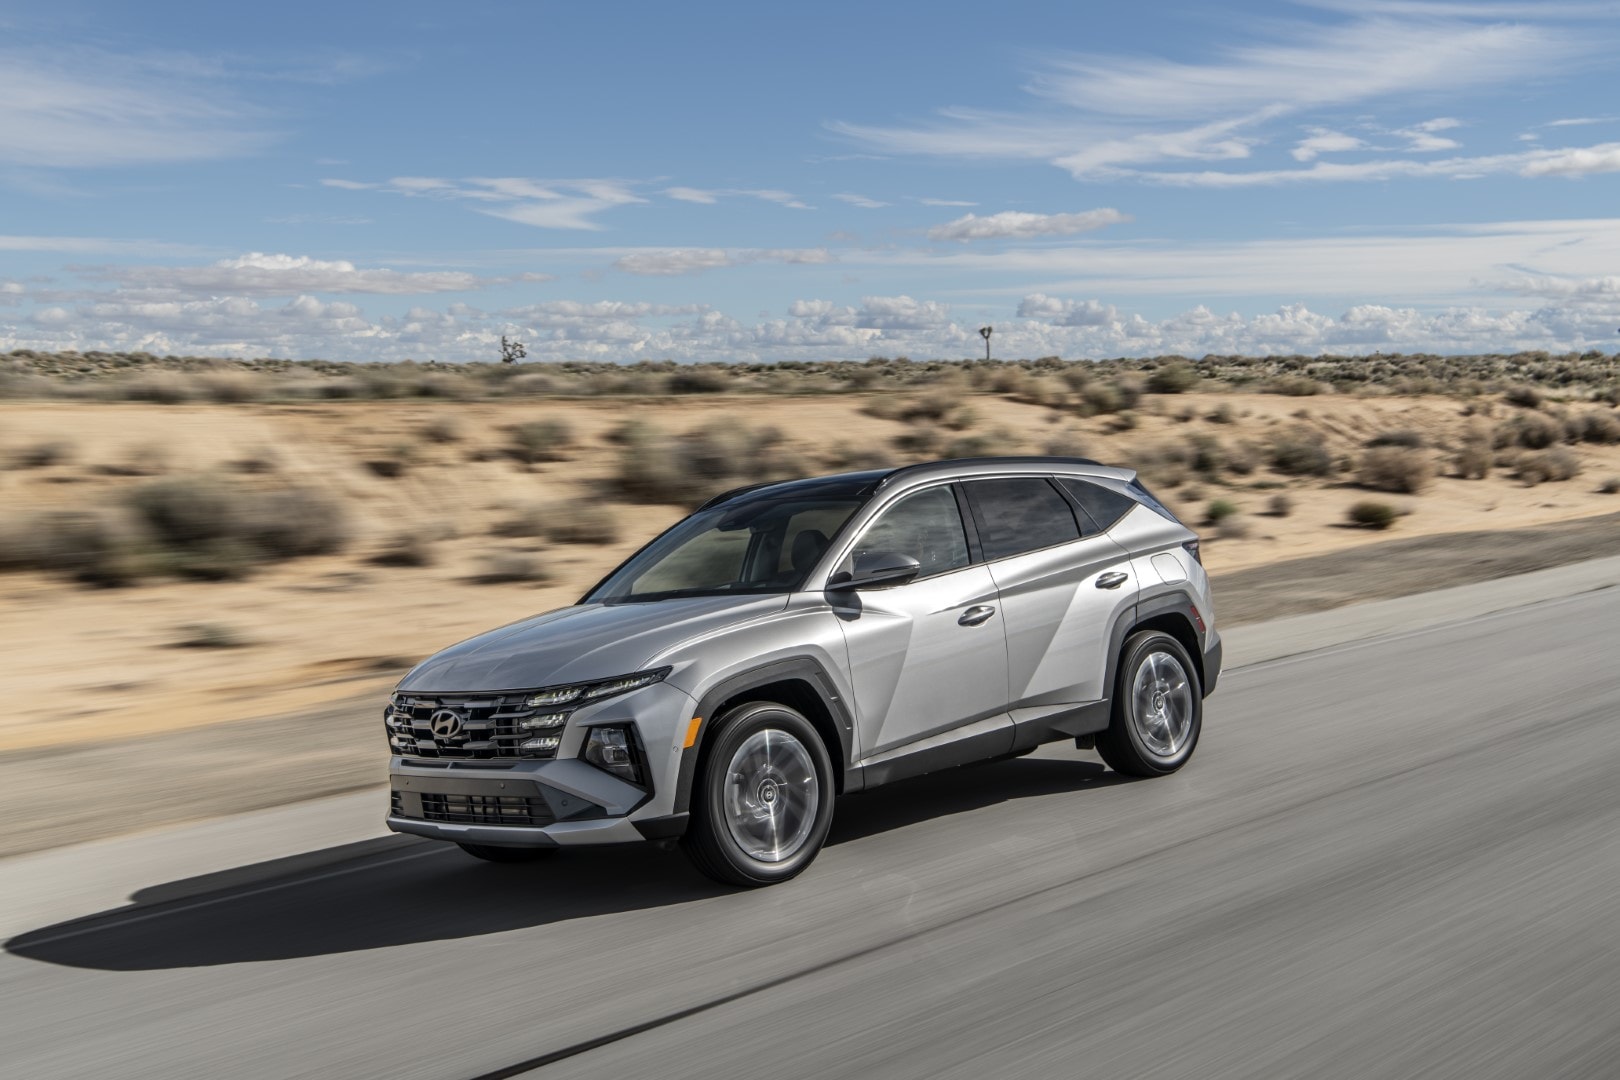 El Hyundai Tucson Híbrido muestra su dinámica silueta en carretera.